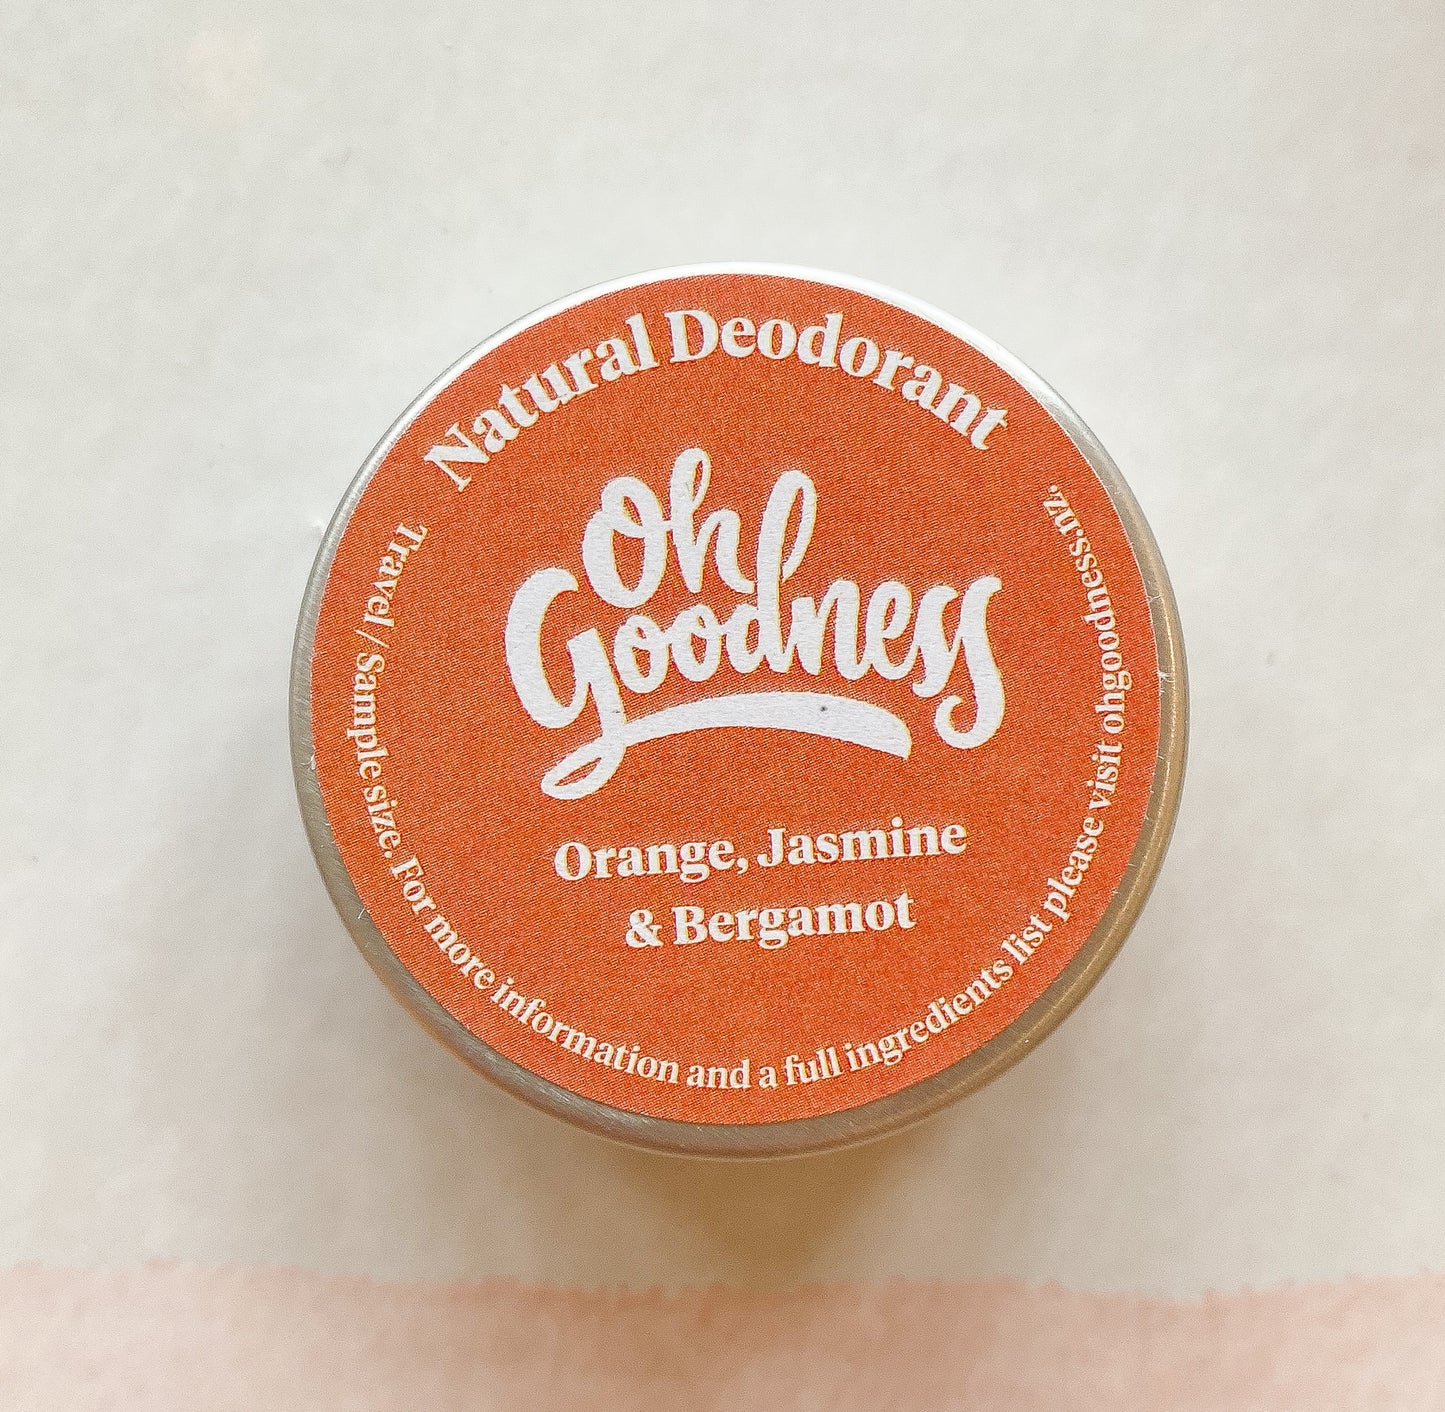 Natural deodorant in Orange, Jasmine & Bergamot in travel size